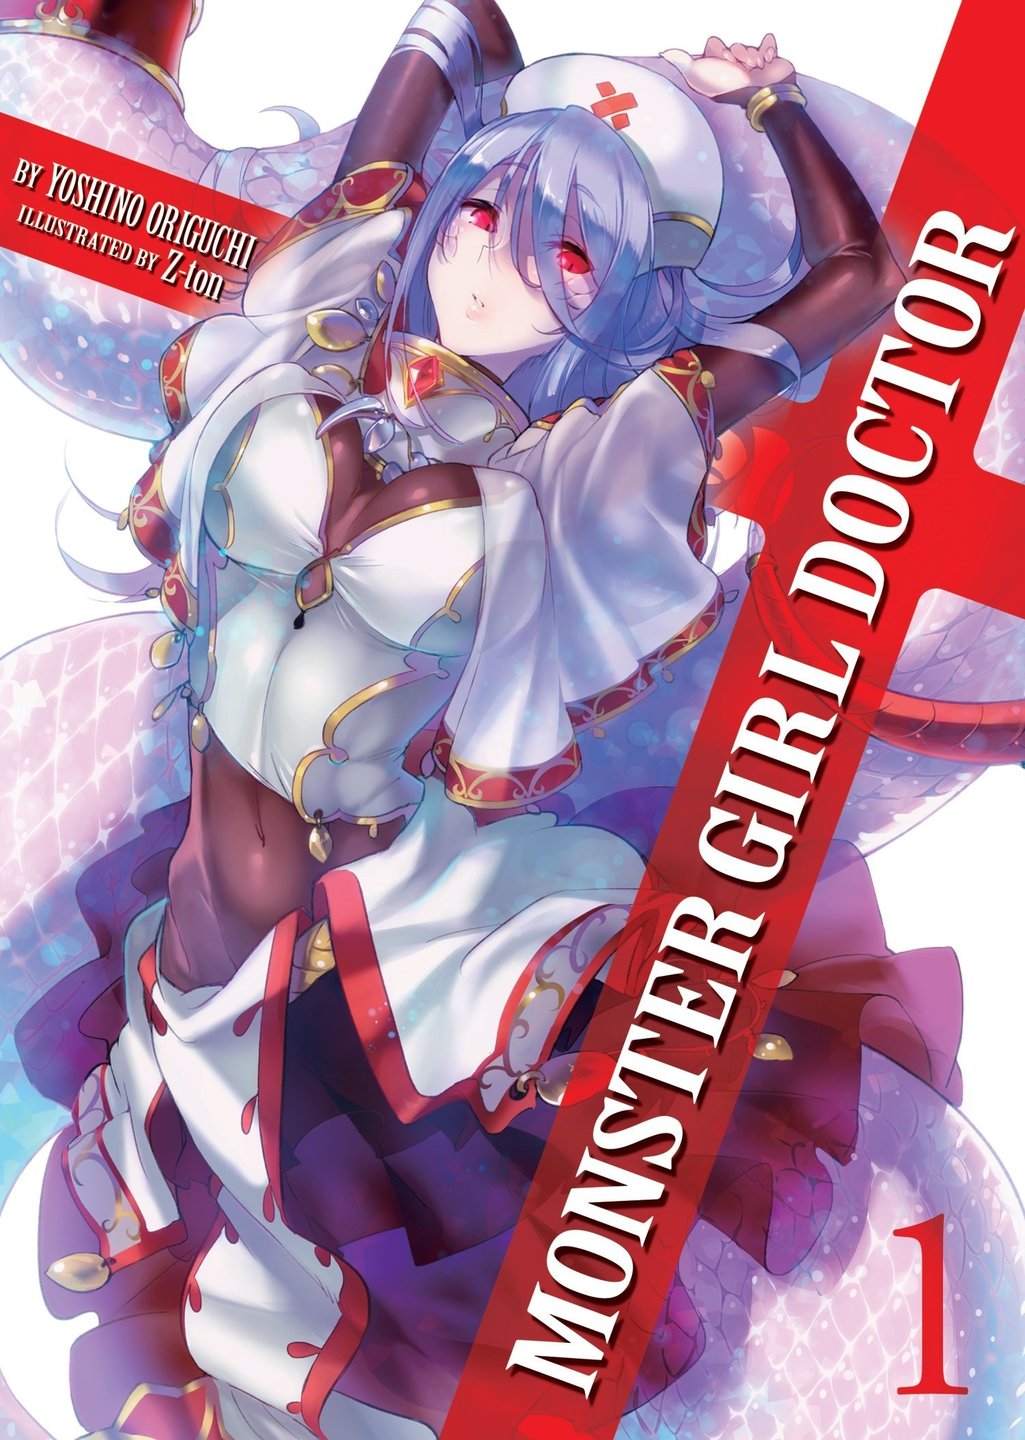 Monster Girl Doctor (Light Novels) - Yoshino Origuchi & Z-Ton